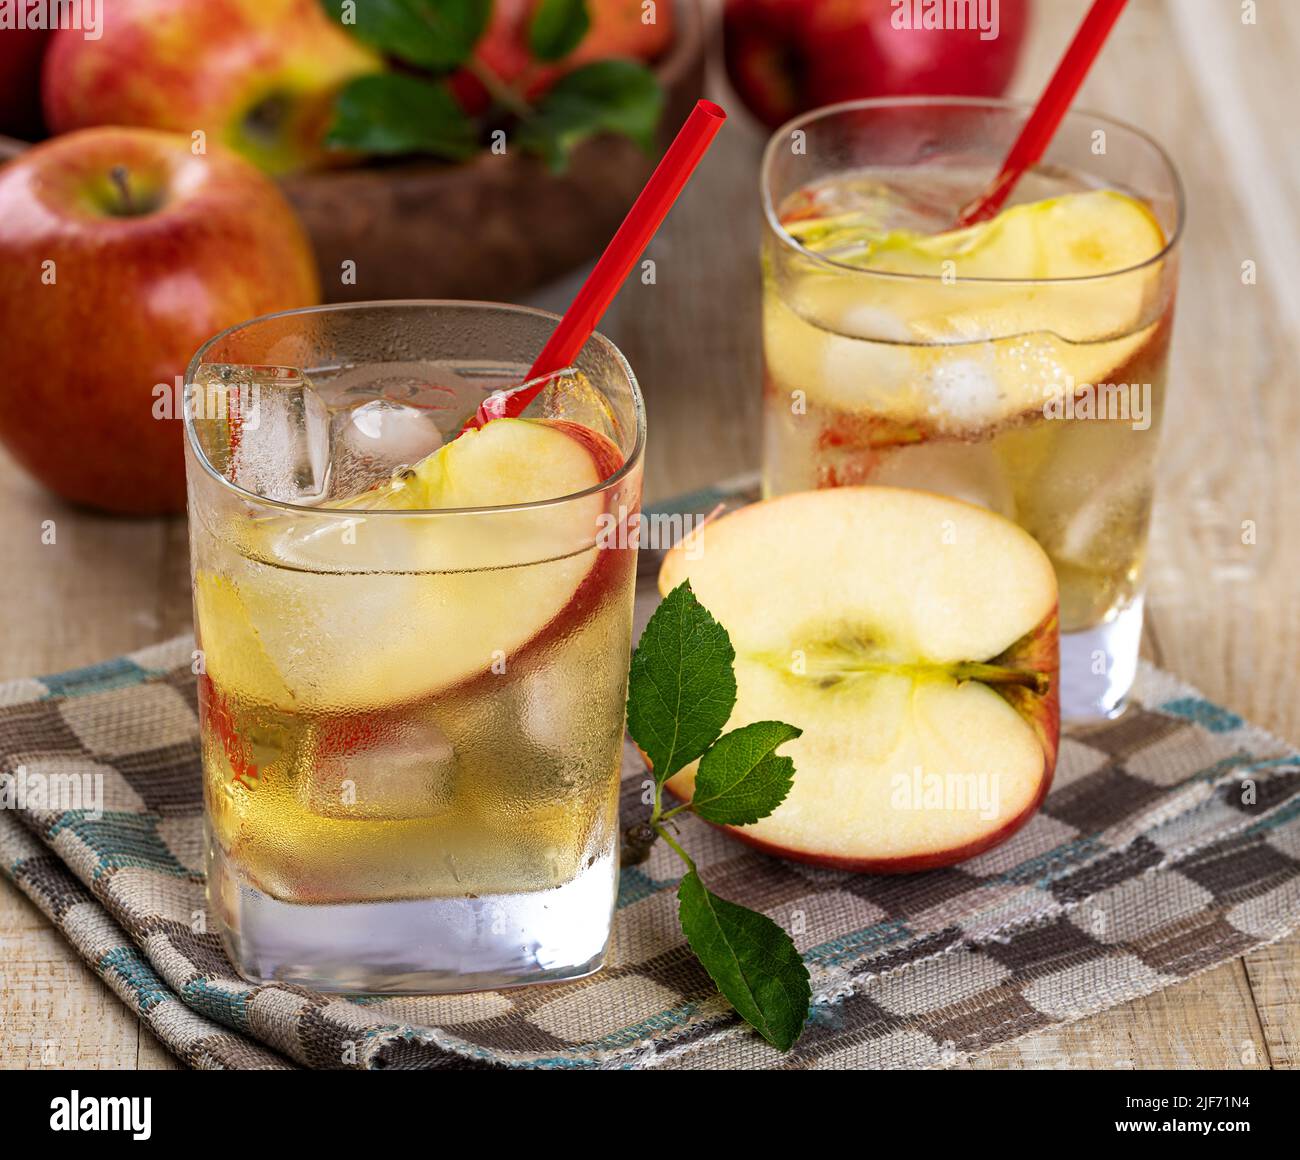 Primer plano de vaso frío de zumo de manzana con manzanas en rodajas y manzanas de fondo Foto de stock